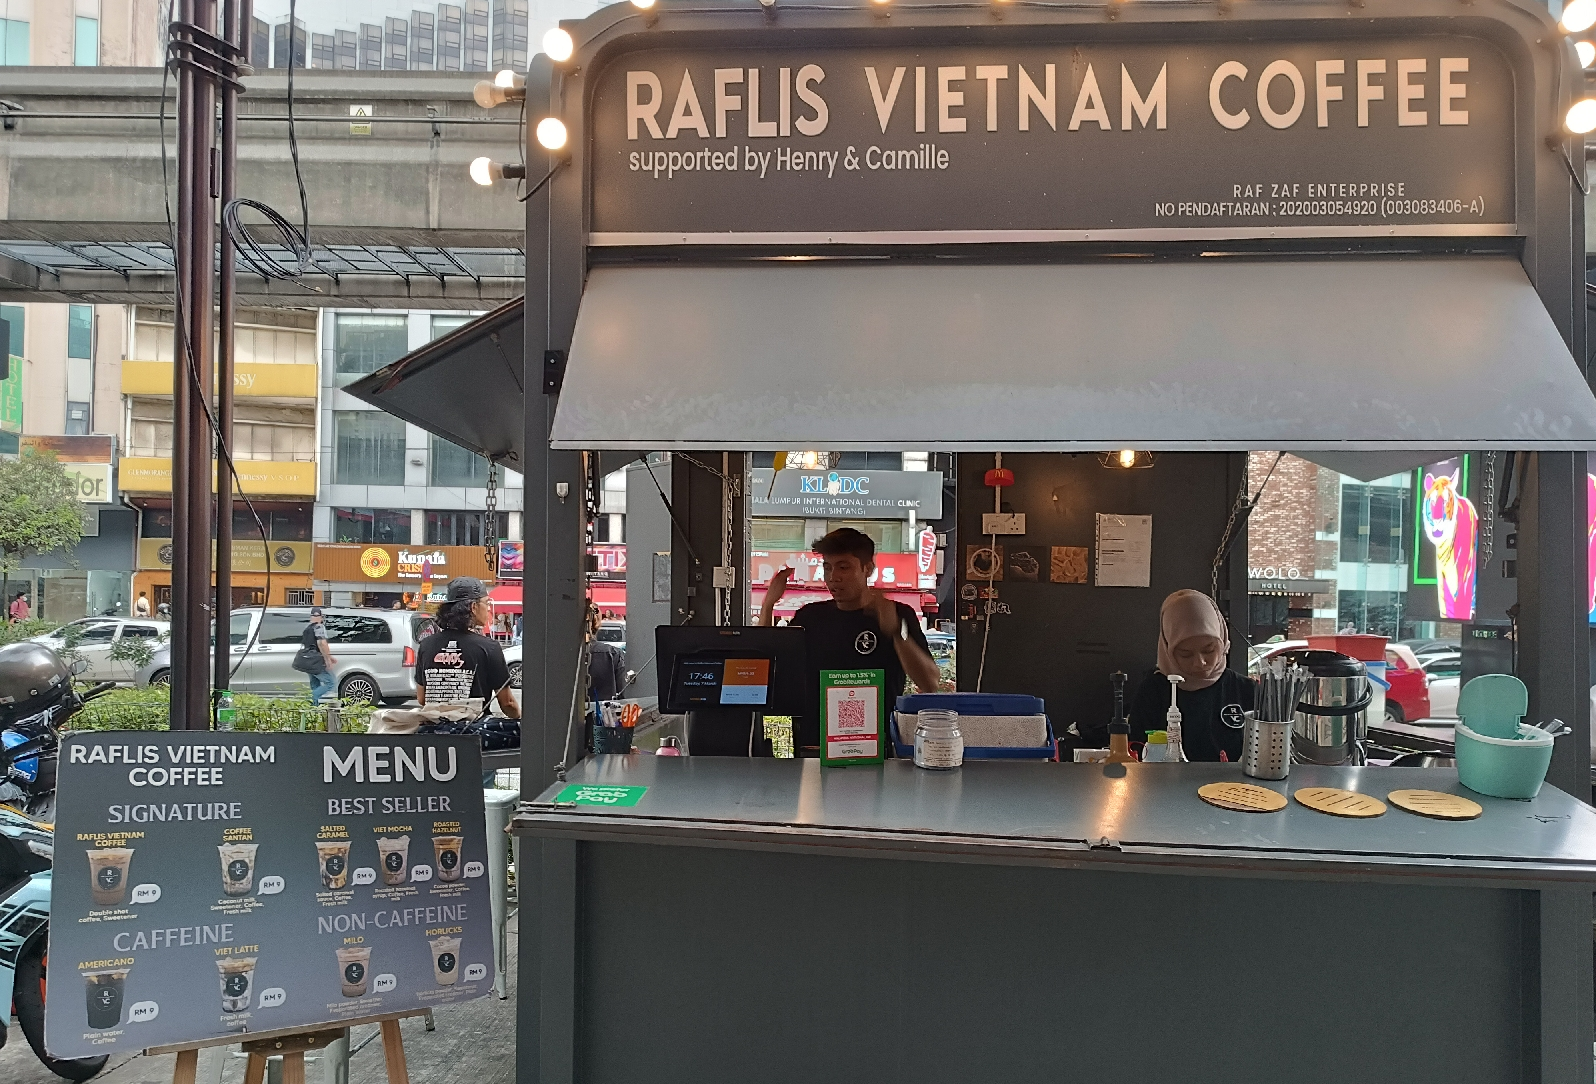 Vietnamese Coffee - Raflis Vietnam Coffee shop